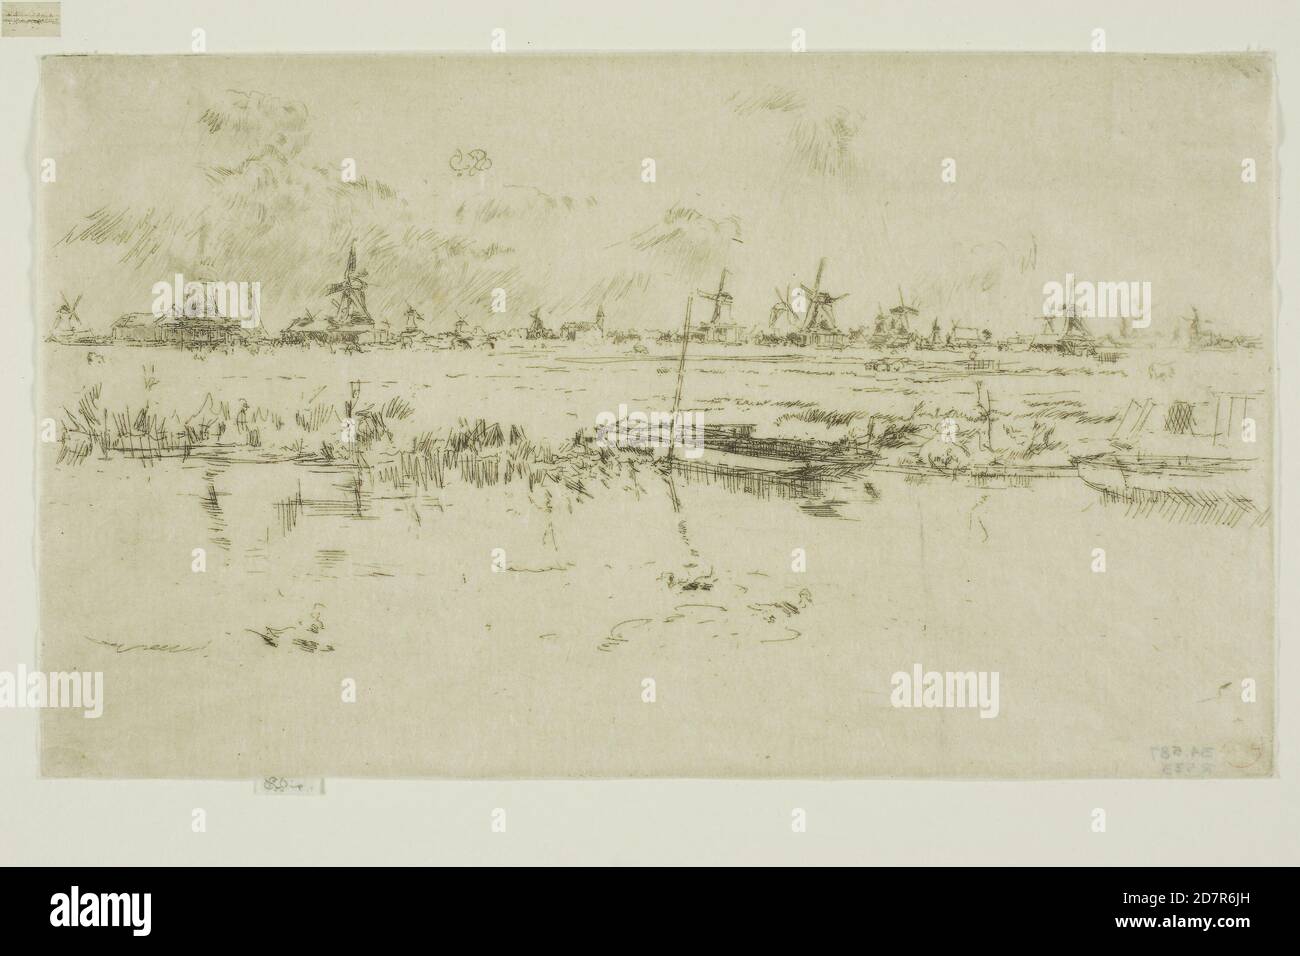 Zaandam - 1889 ; James McNeill Whistler ; américain ; 1834-1903 (gravure et point sec avec morsure à l'encre noire sur papier japonais ivoire) Banque D'Images